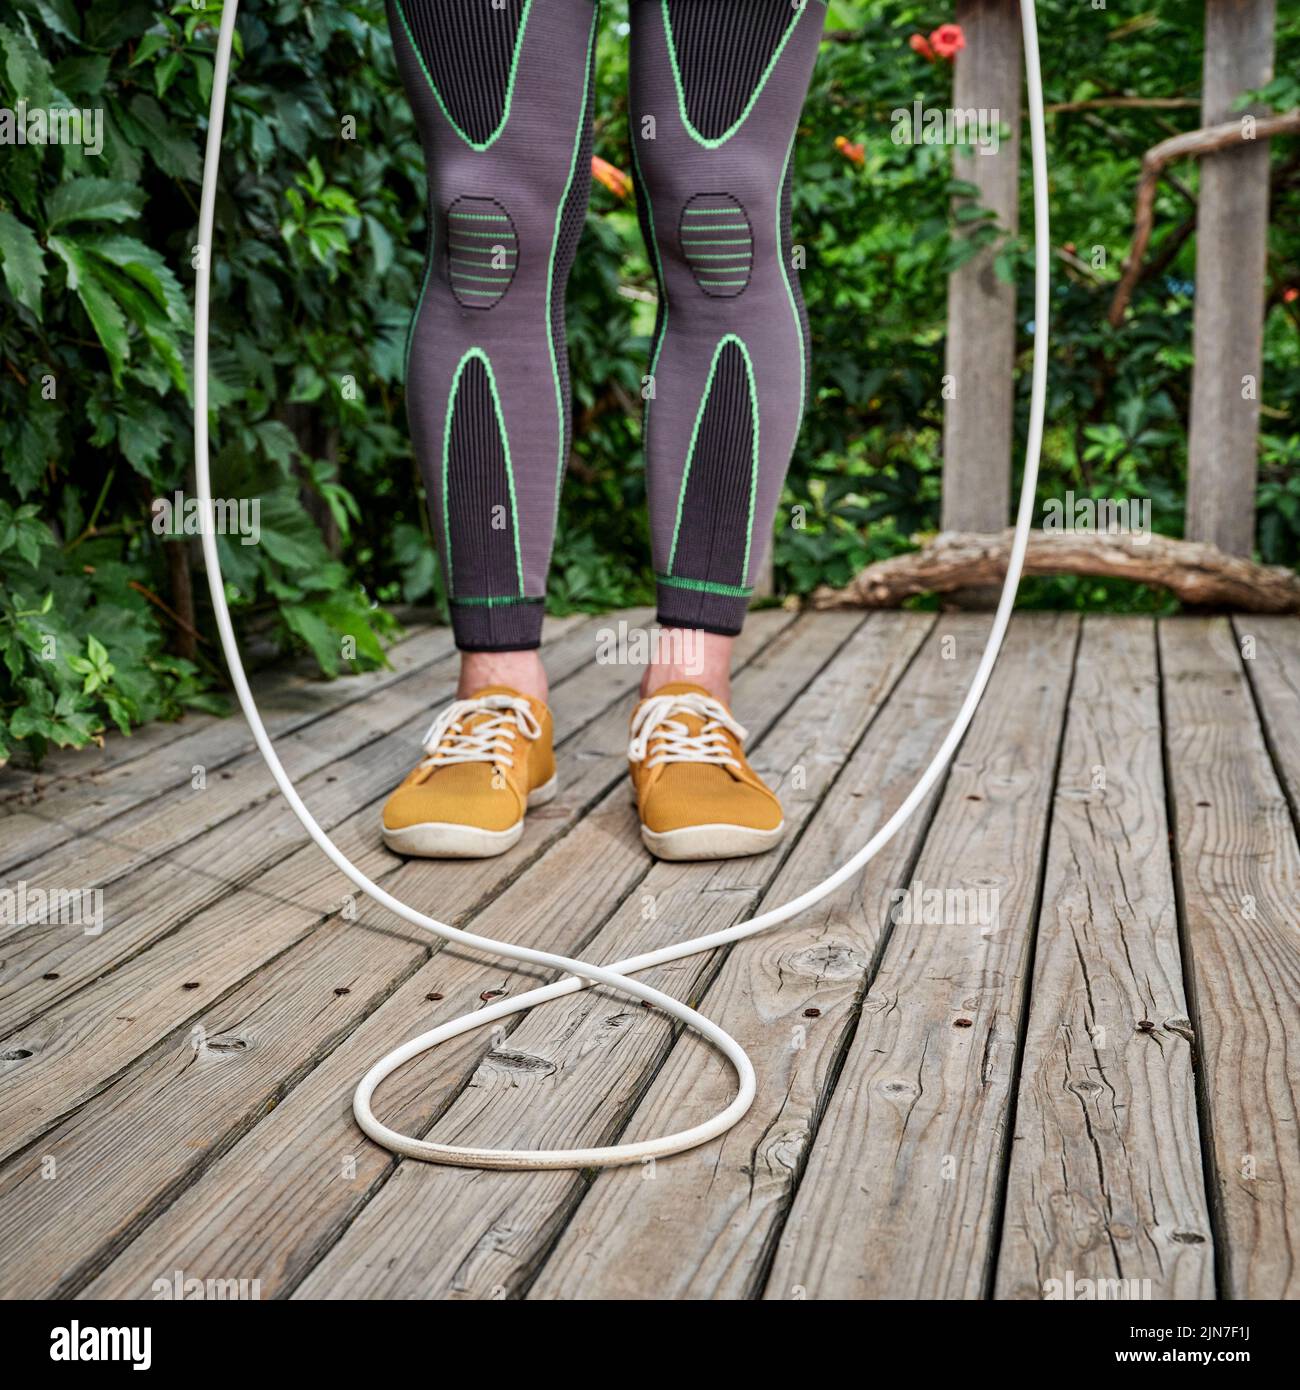 entrenamiento con una cuerda de salto pesada - piernas masculinas en medias de compresión en una cubierta de madera, concepto de fitness patio trasero Foto de stock